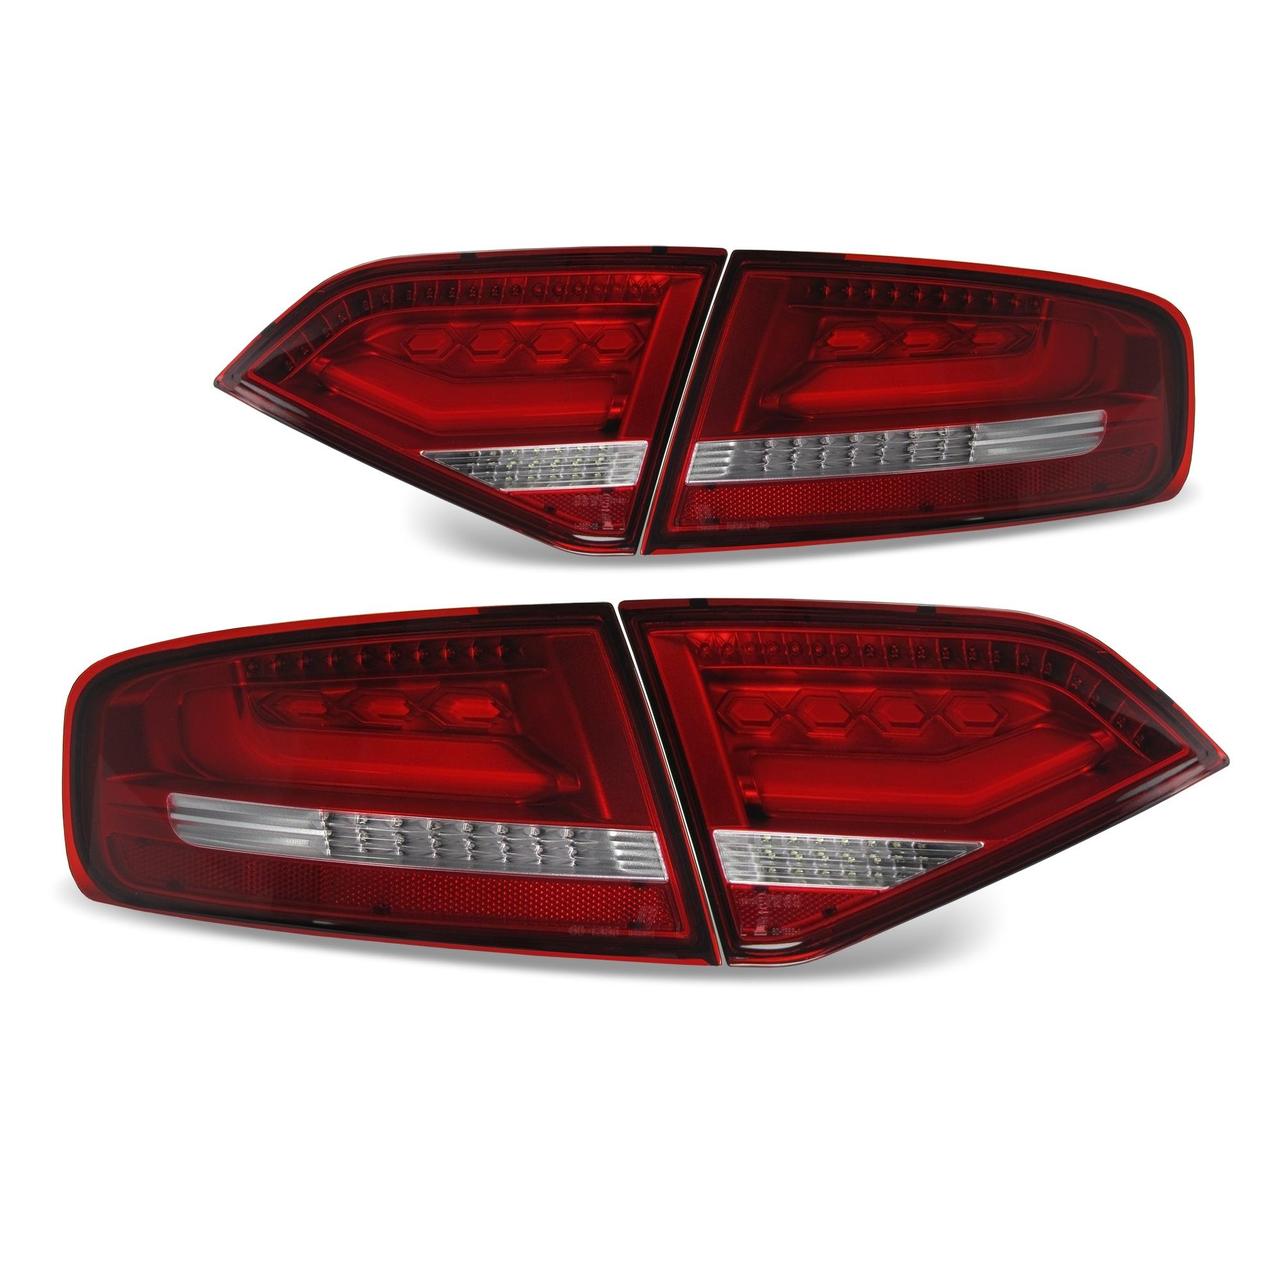 Stopuri LED pentru Audi A4 B8 (8K) model rosu-clar #1668750